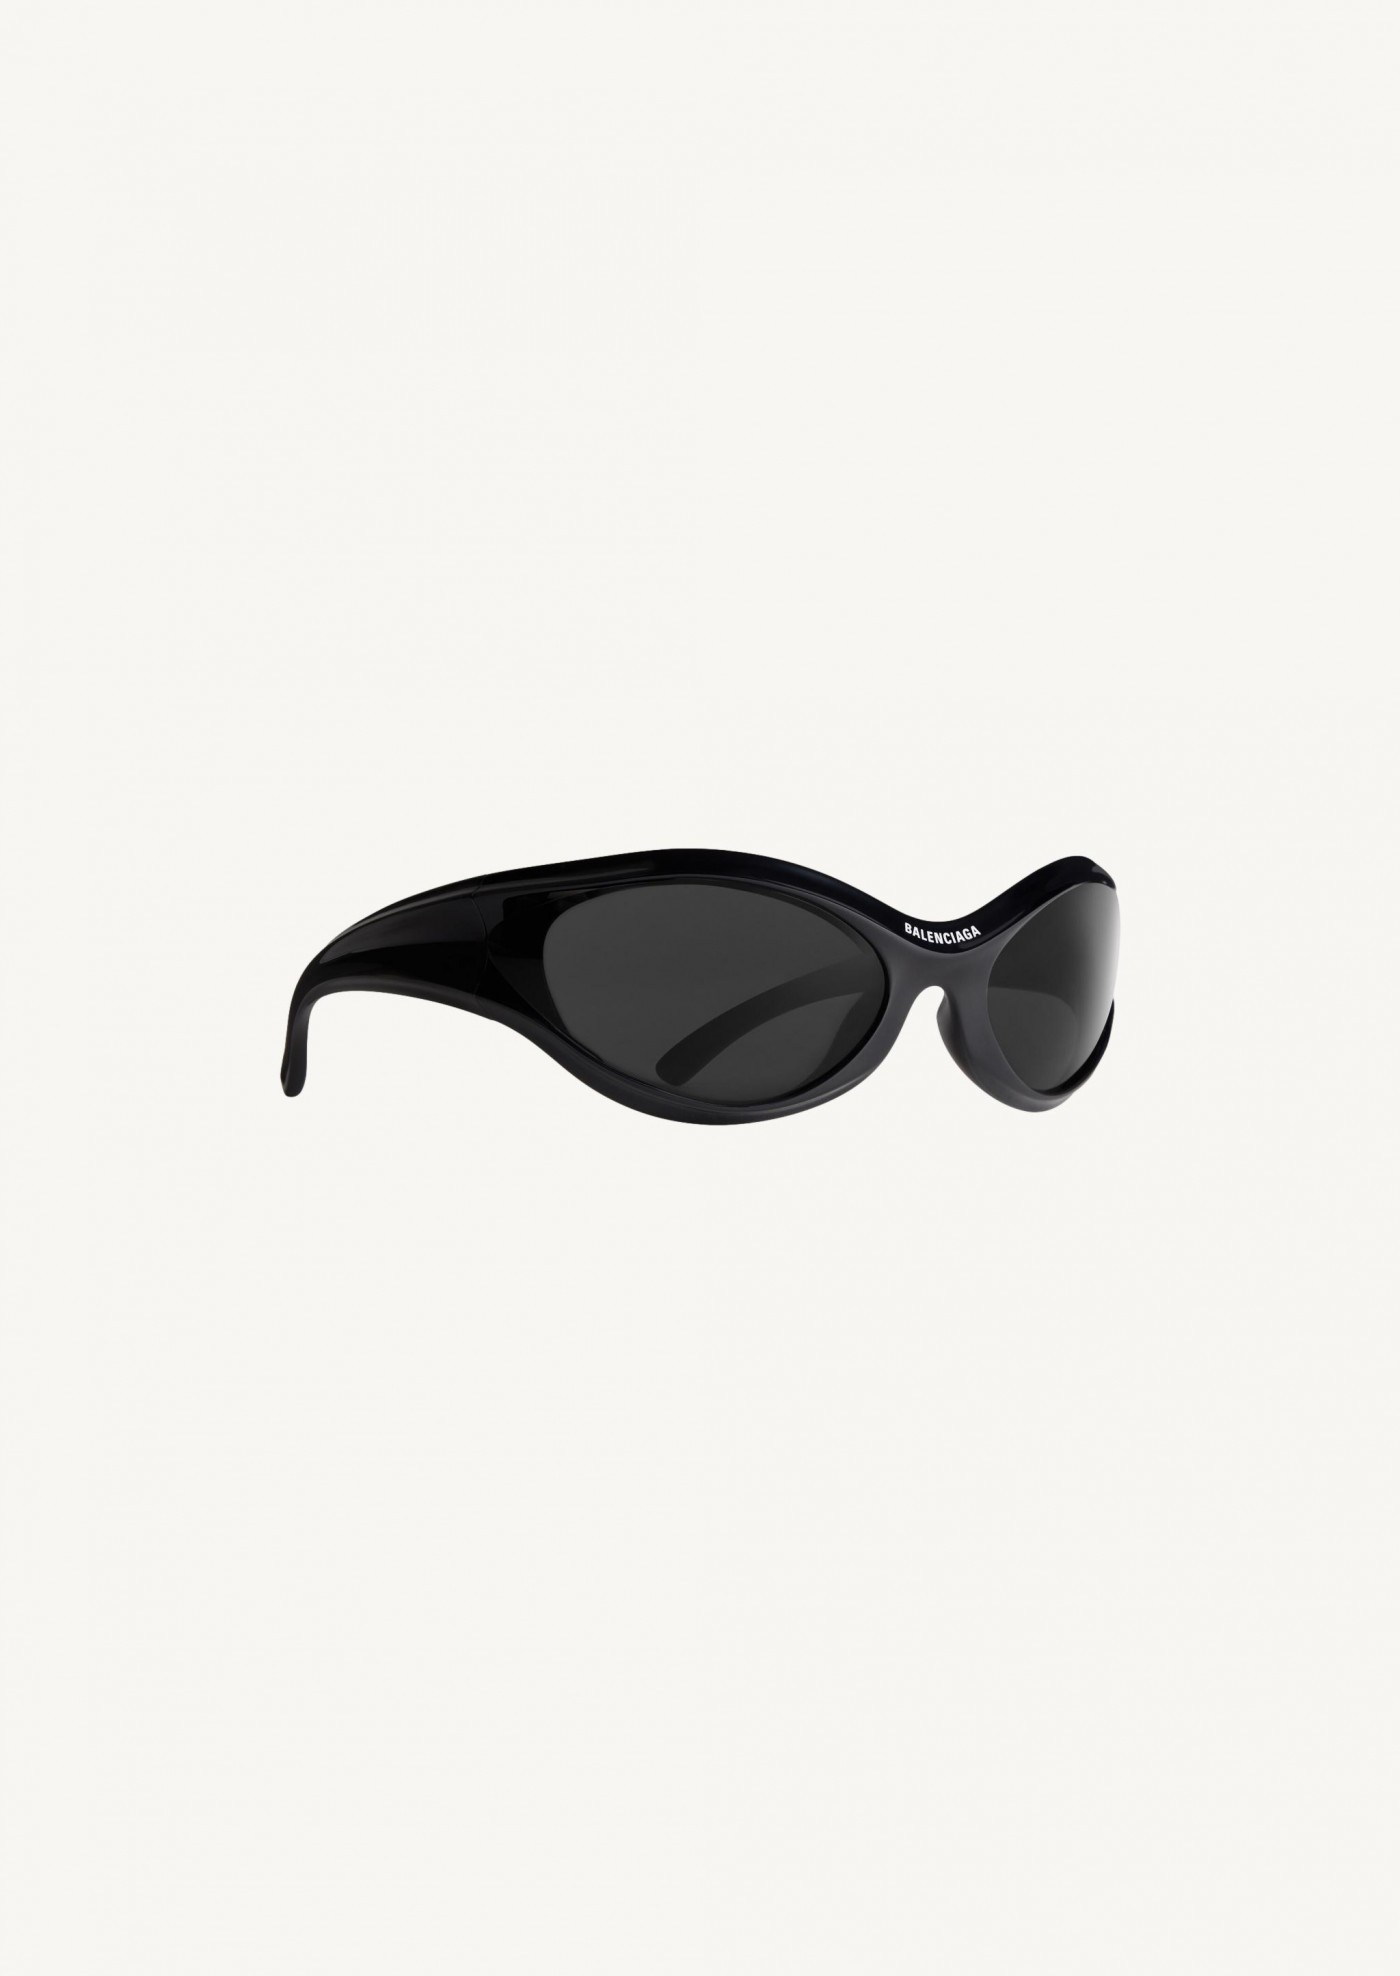 Dynamo round sunglasses in black